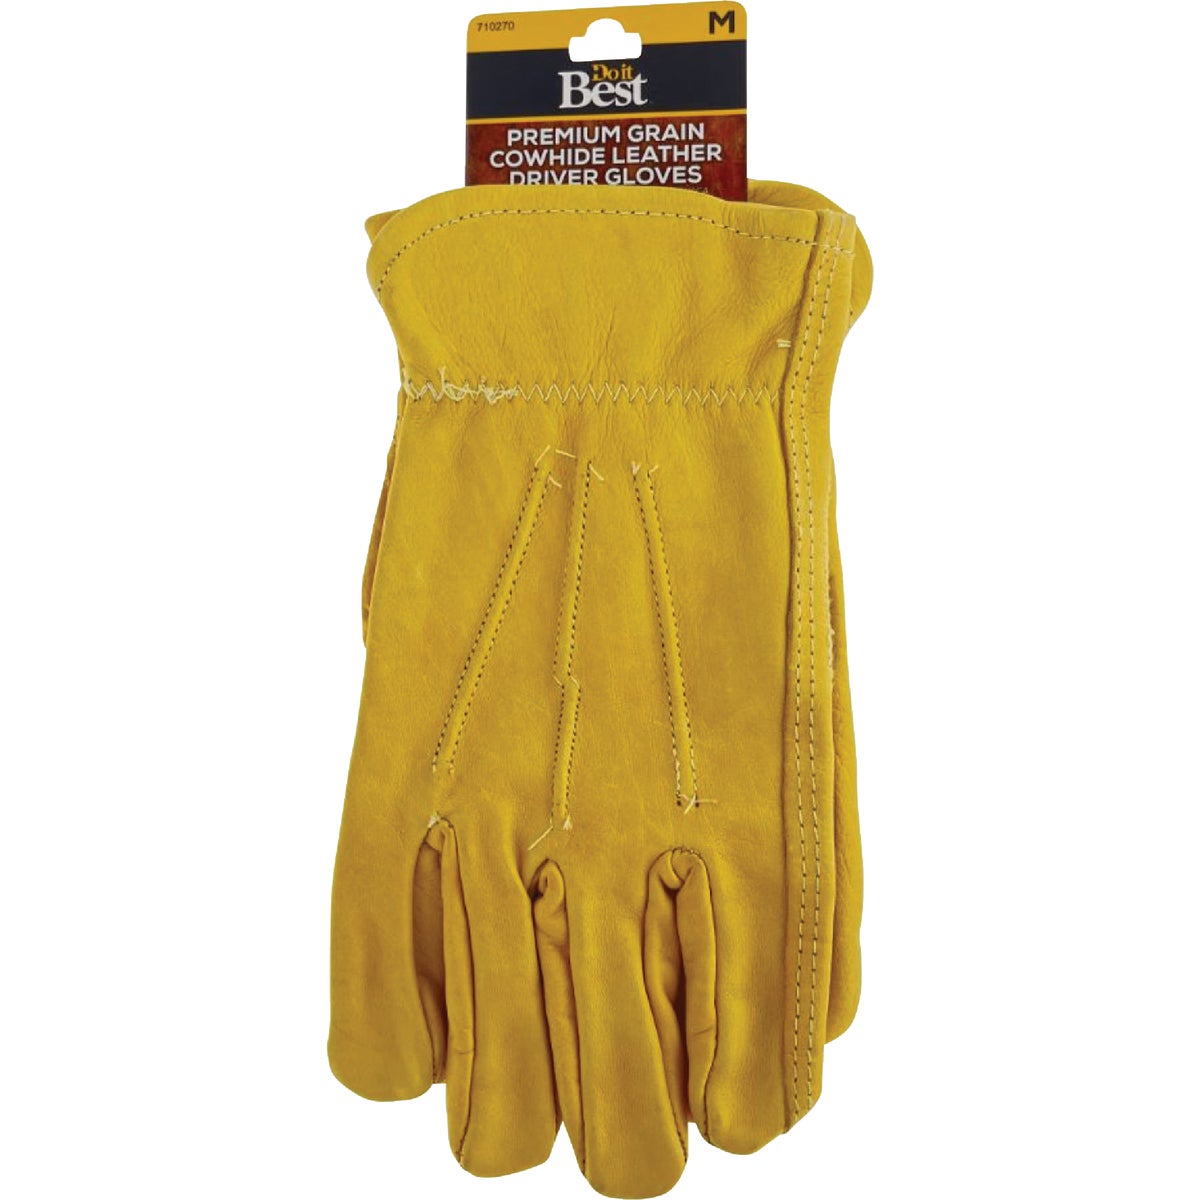 Item 710270, Top grain cowhide leather work glove.